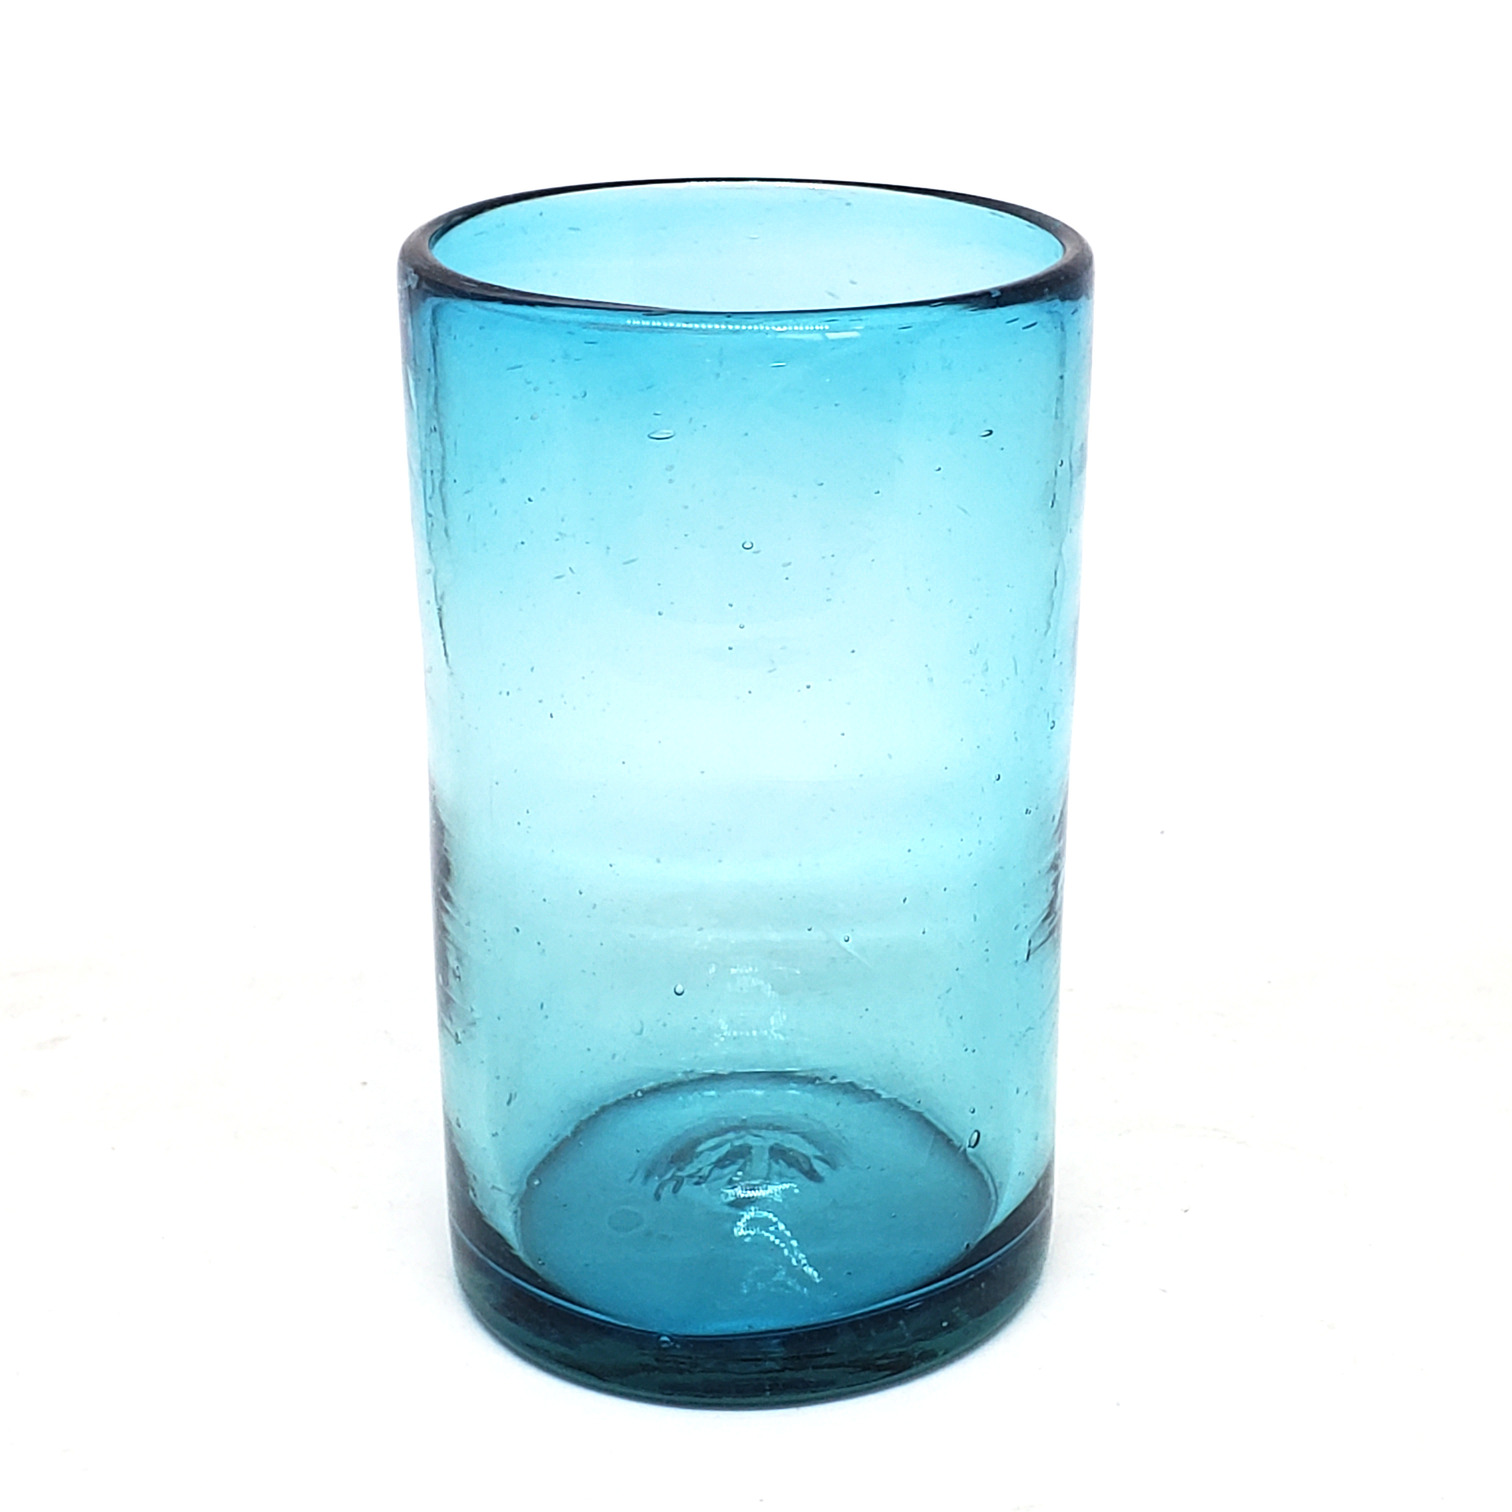 Novedades / Juego de 6 vasos grandes color azul aqua / Éstos artesanales vasos le darán un toque clásico a su bebida favorita.